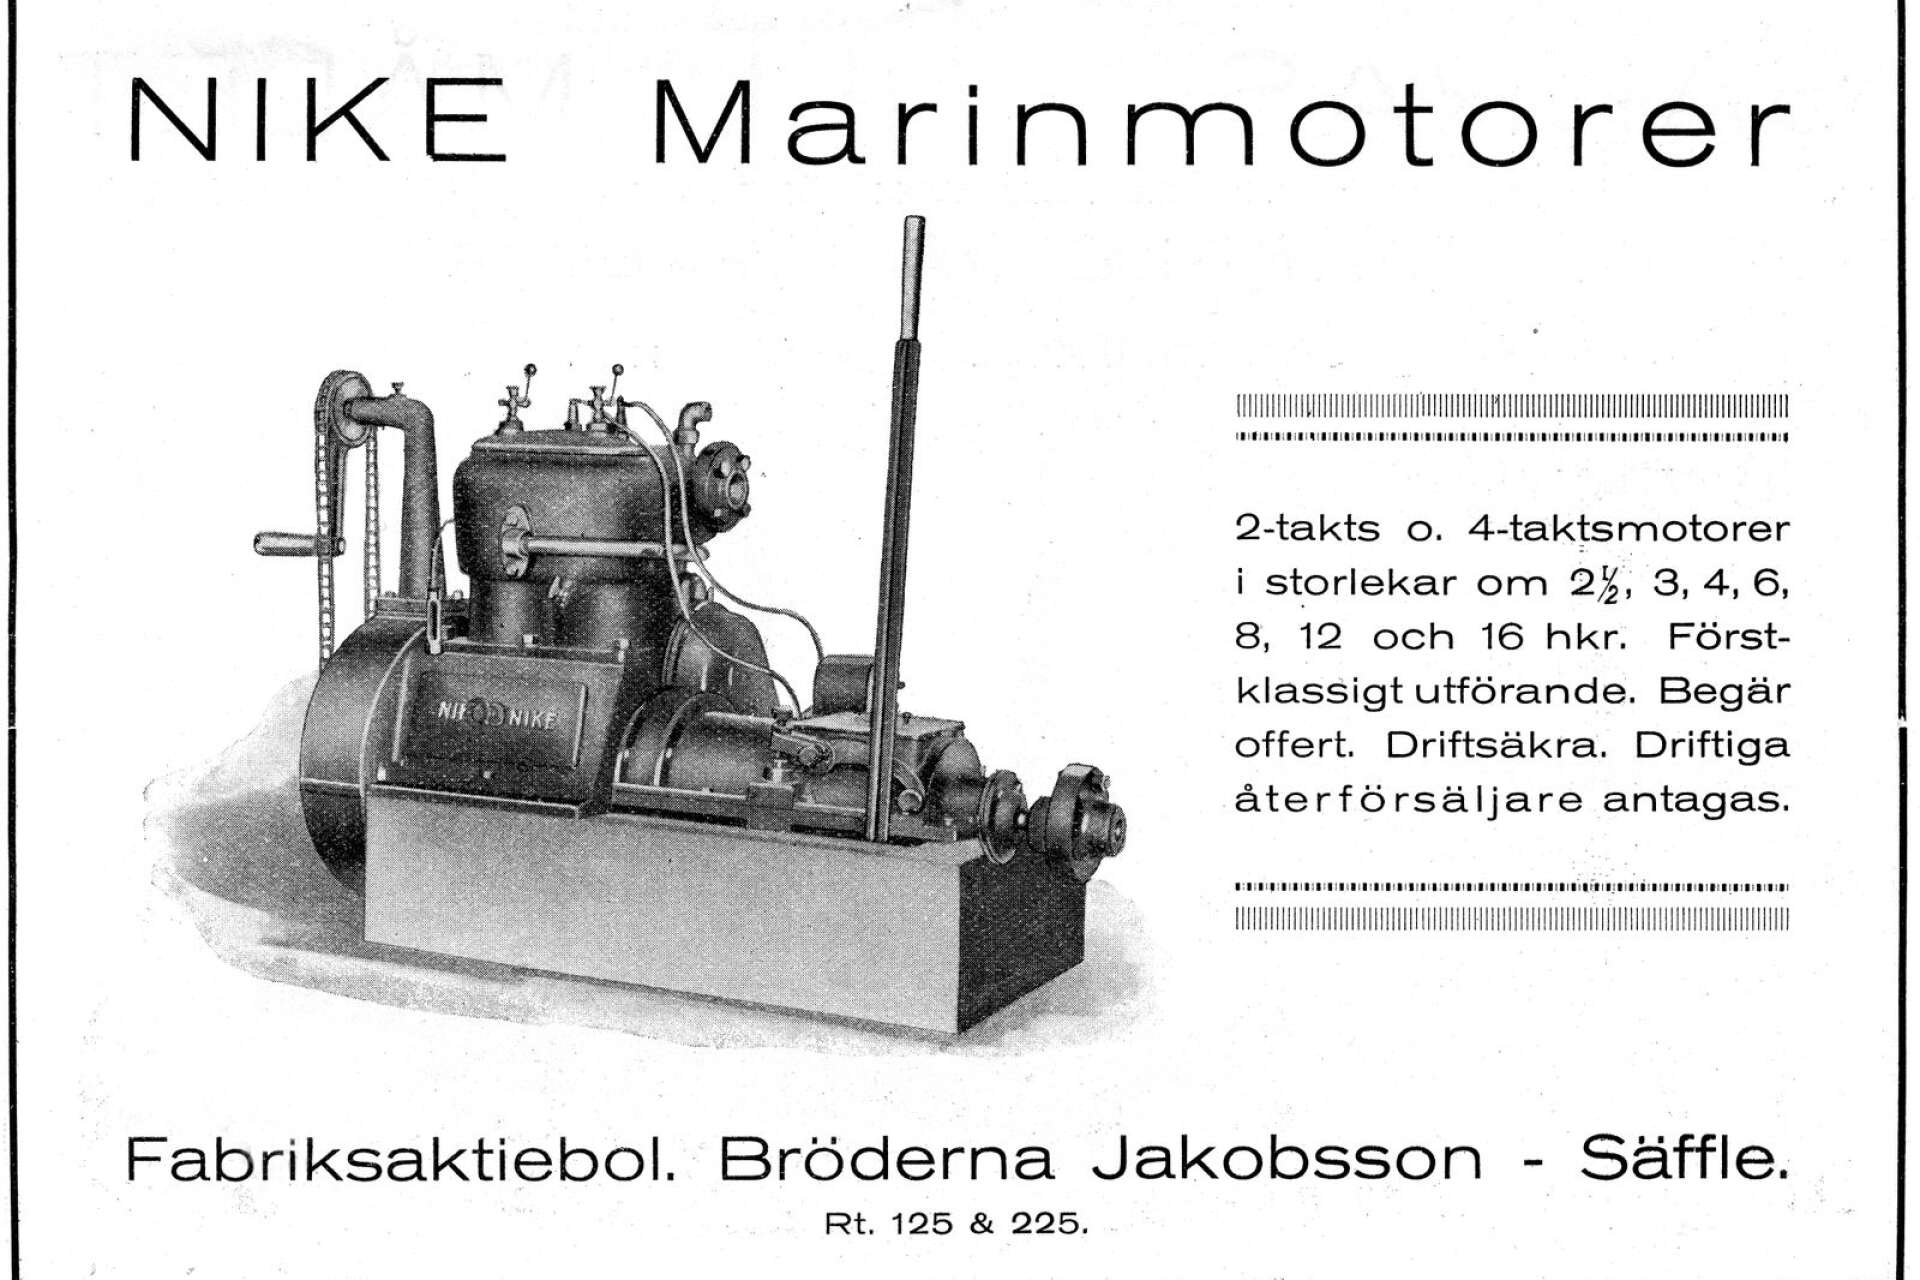 Redan 1923 annonserade Bröderna Jakobsson om Nikemotorn, som tillverkades i olika storlekar.